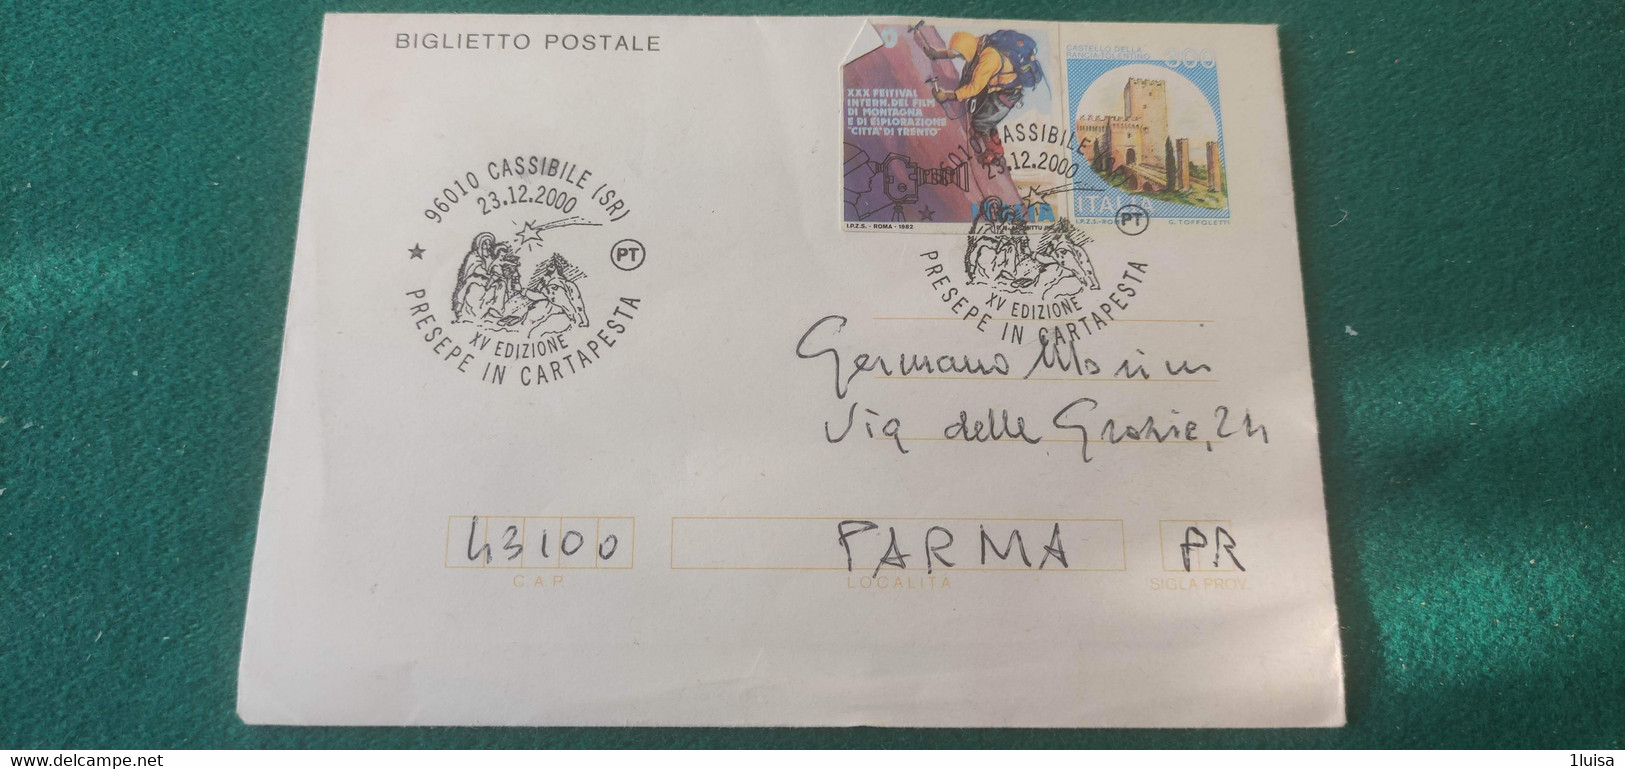 2000 Presepe In Cartapesta XV° Edizione 23/12/2000 Cassibile - 1991-00: Storia Postale